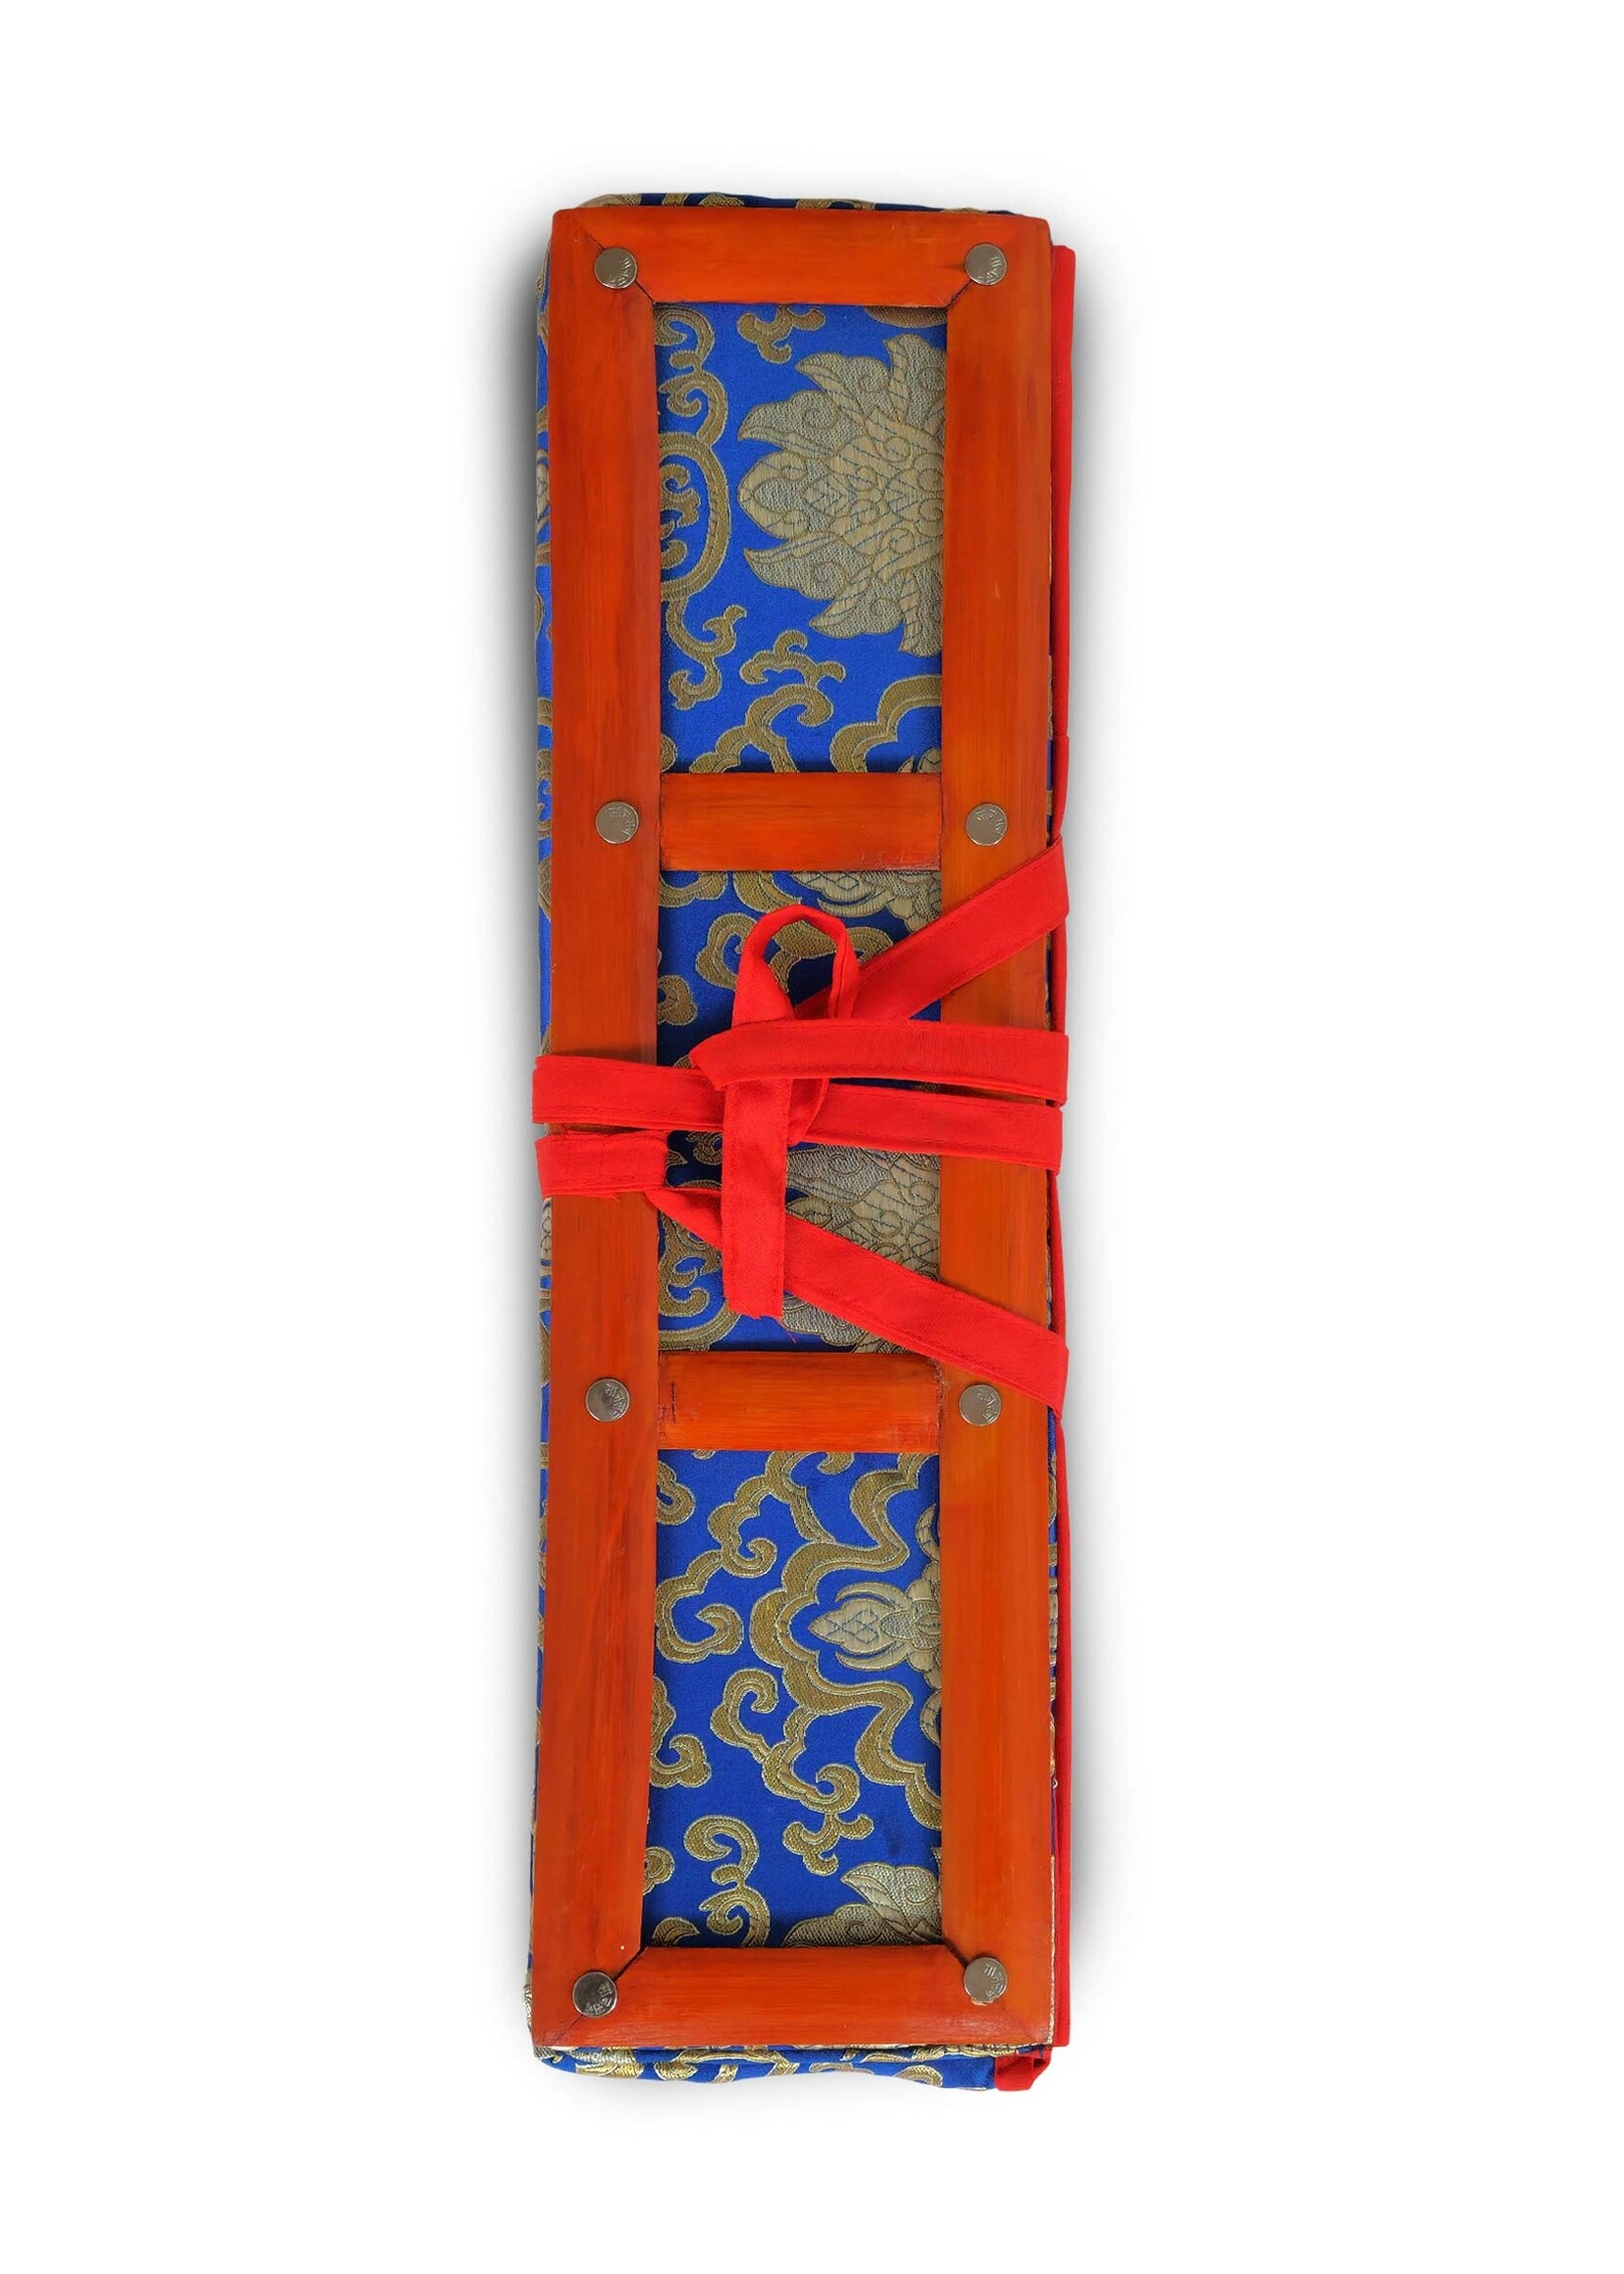 Copertina di testo Dharma in broccato con cornice in bambù, blu